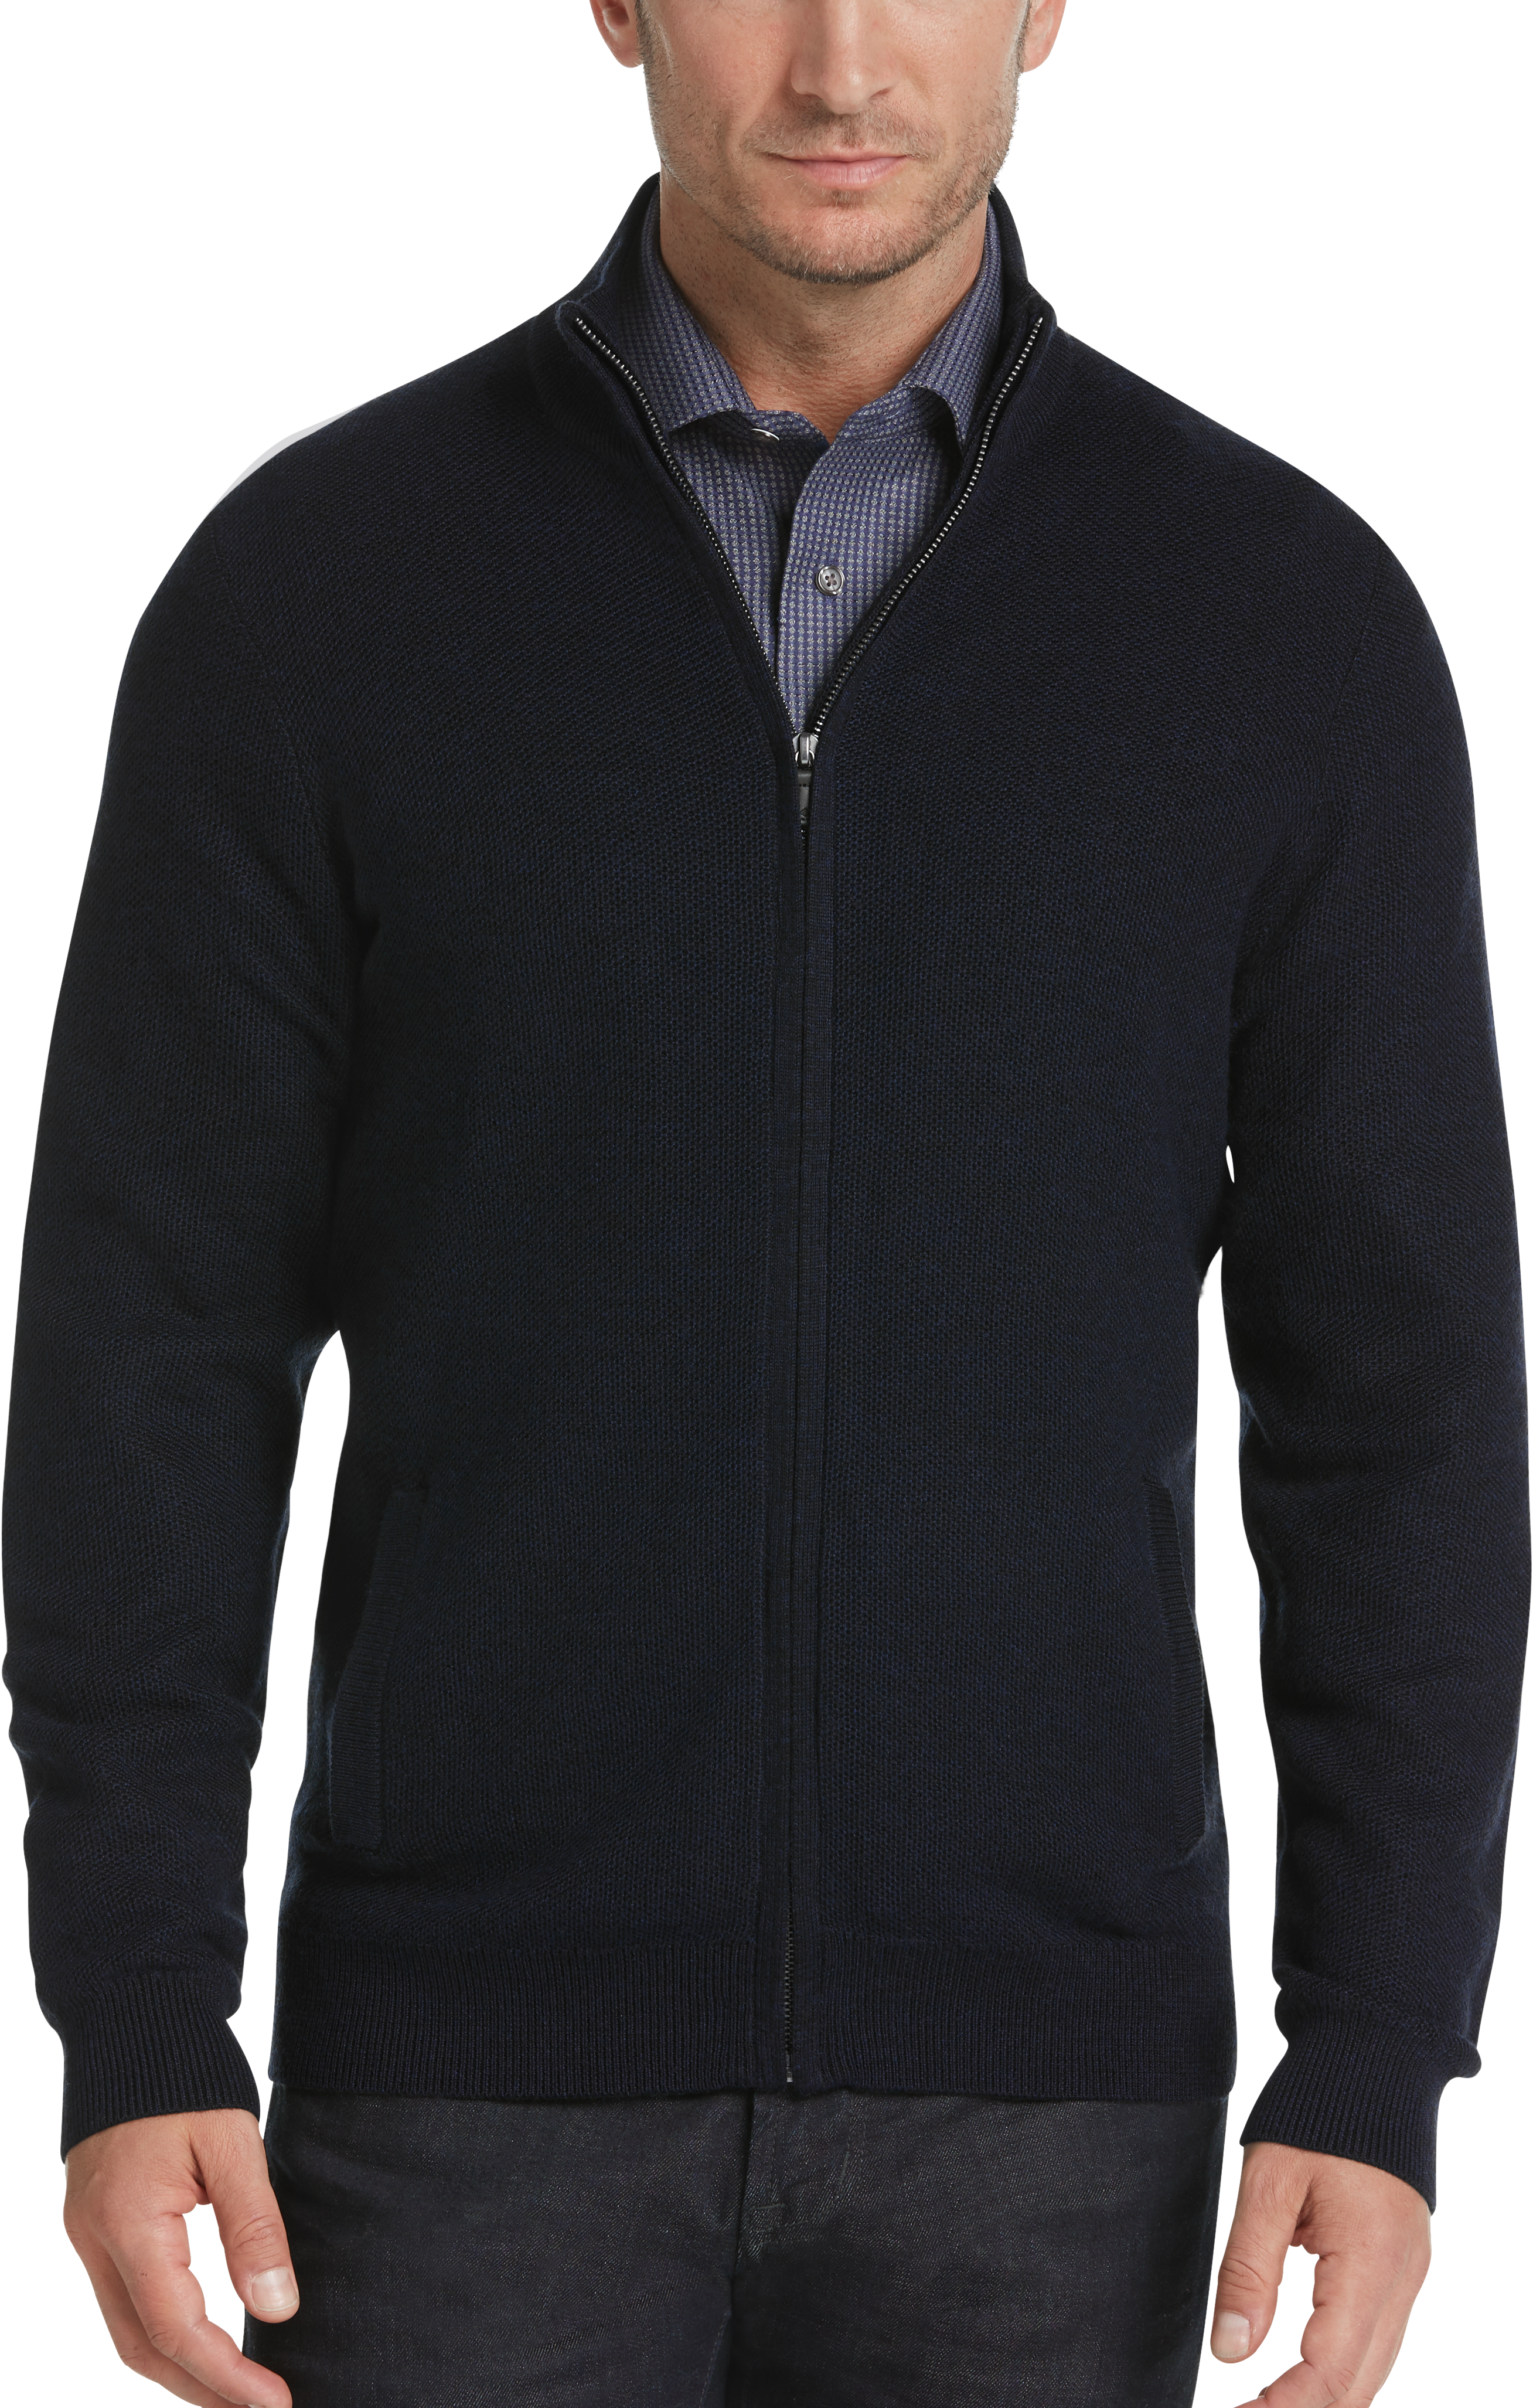 Joseph Abboud Indigo Full-Zip Sweater - Men's Sale | Men's Wearhouse